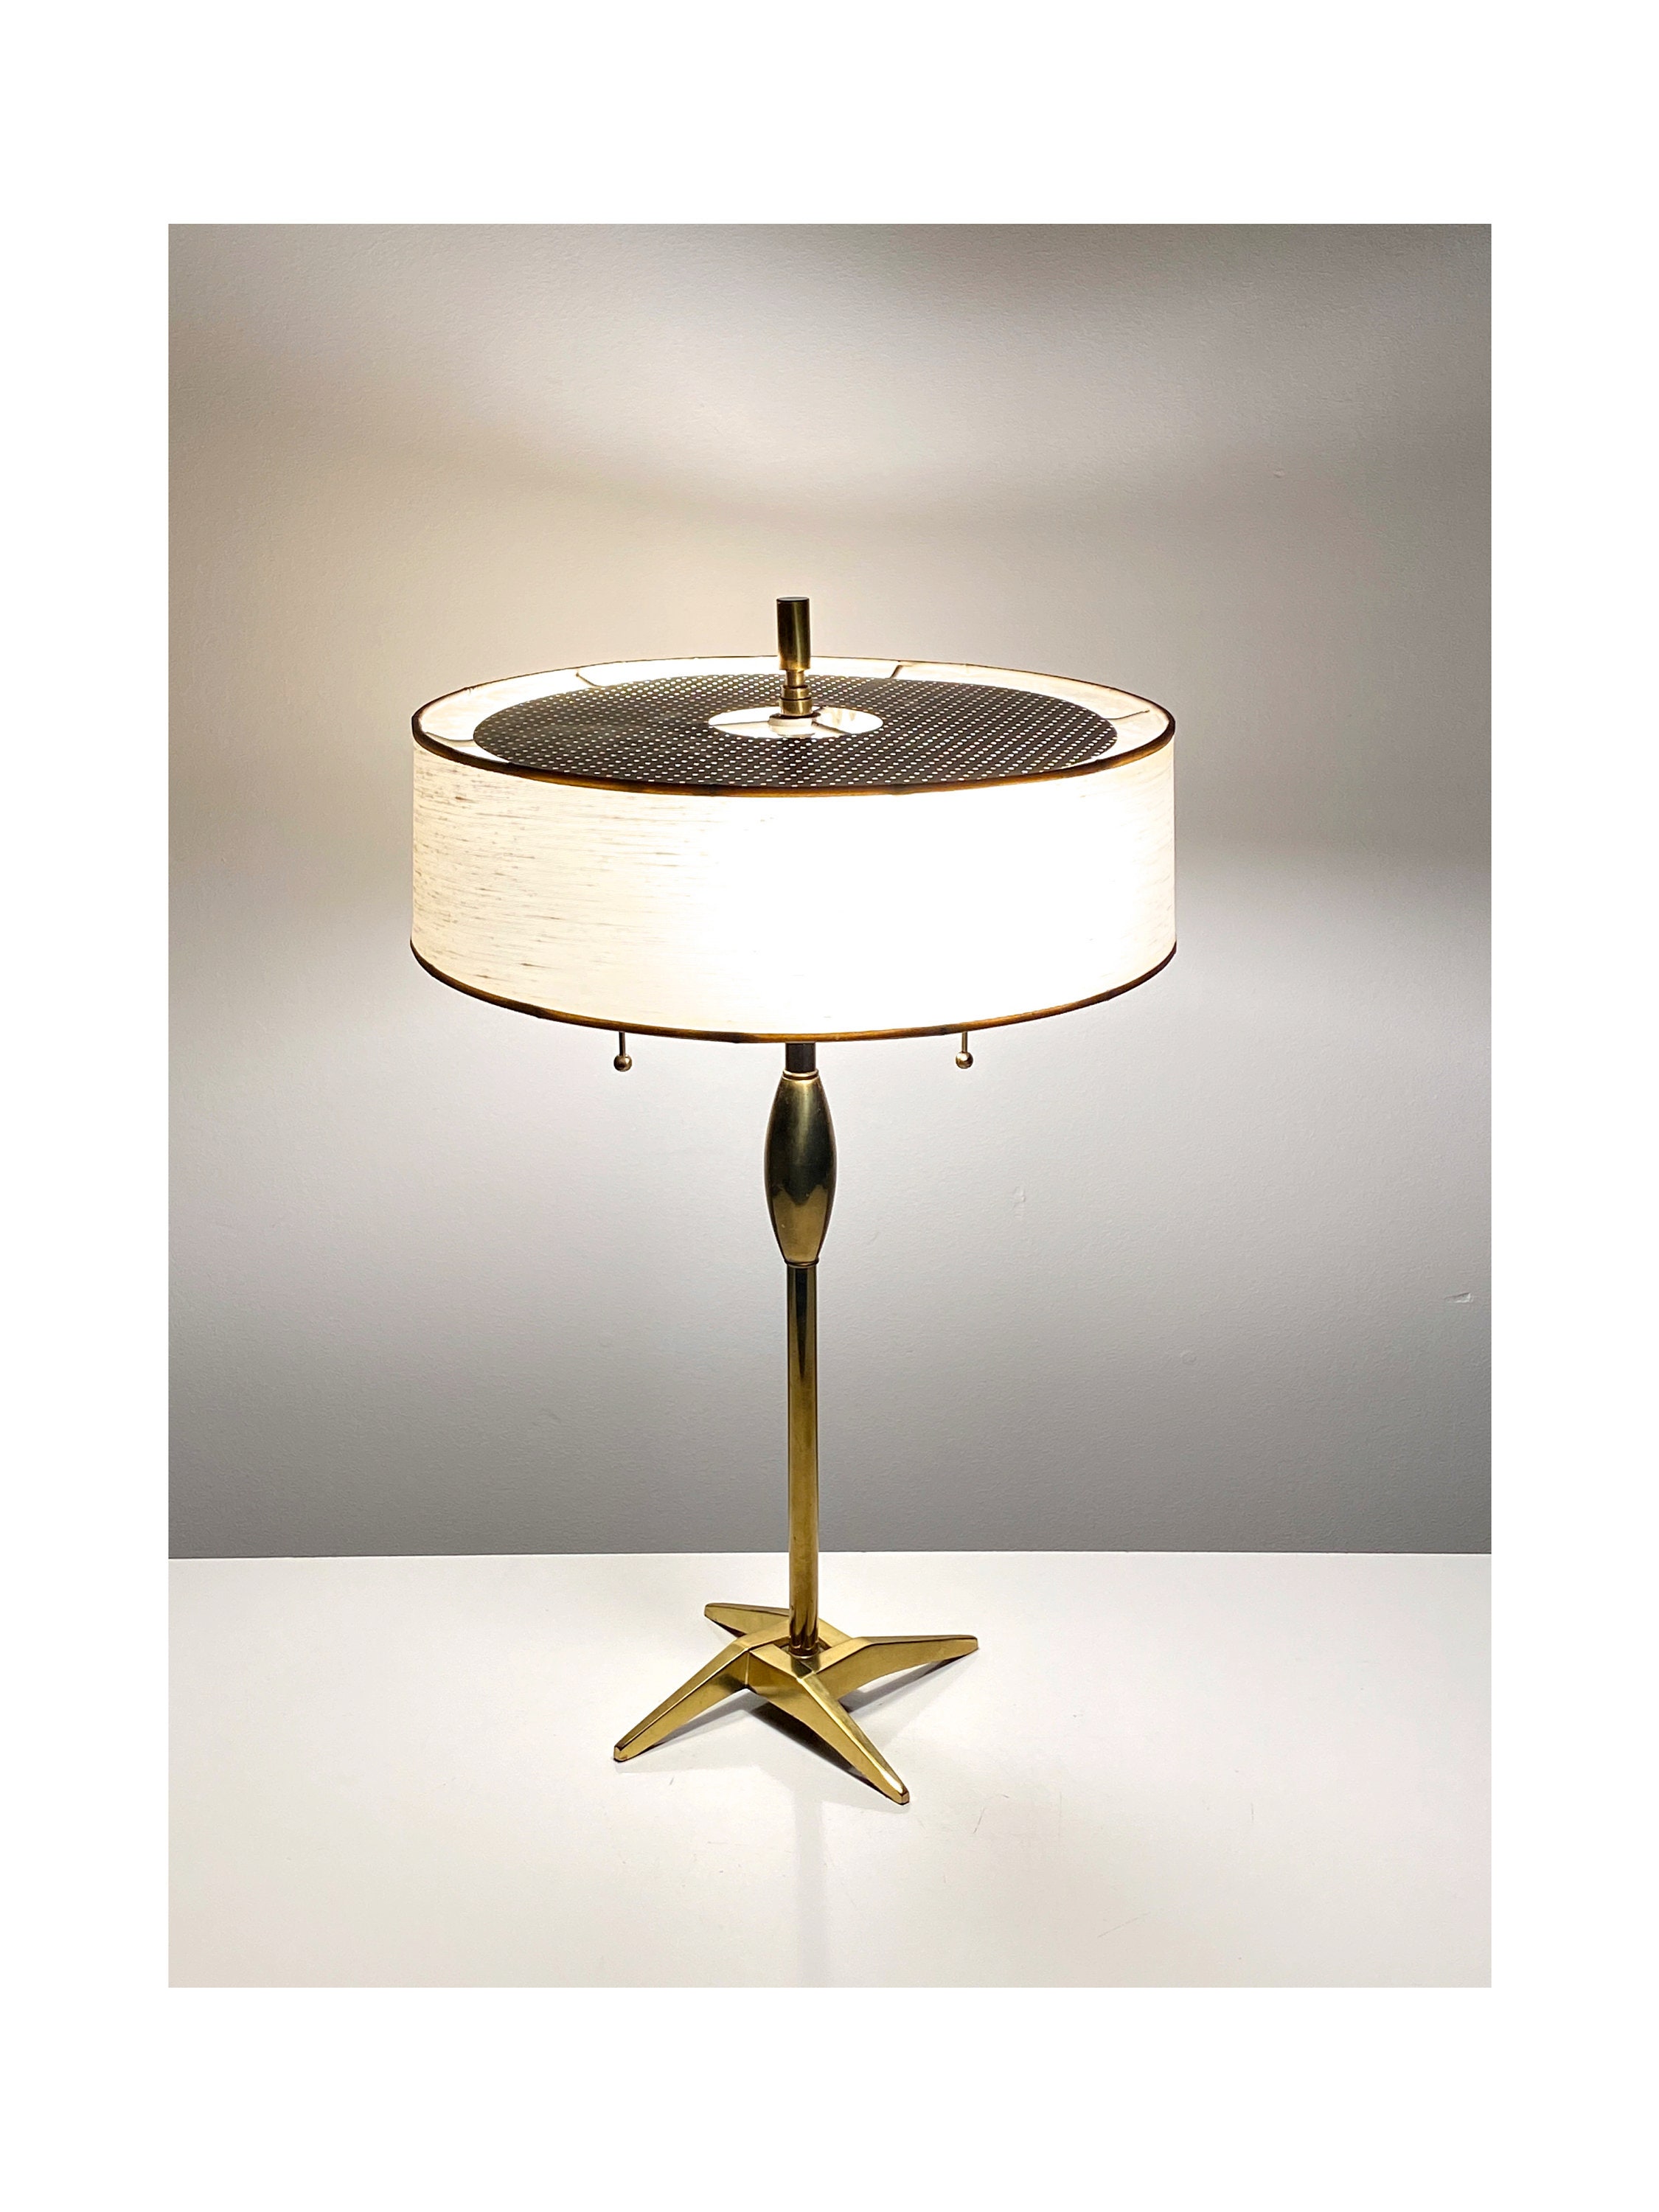 Rare Vintage Stiffel Mid Century Modern Brass Desk Lamp 1950s